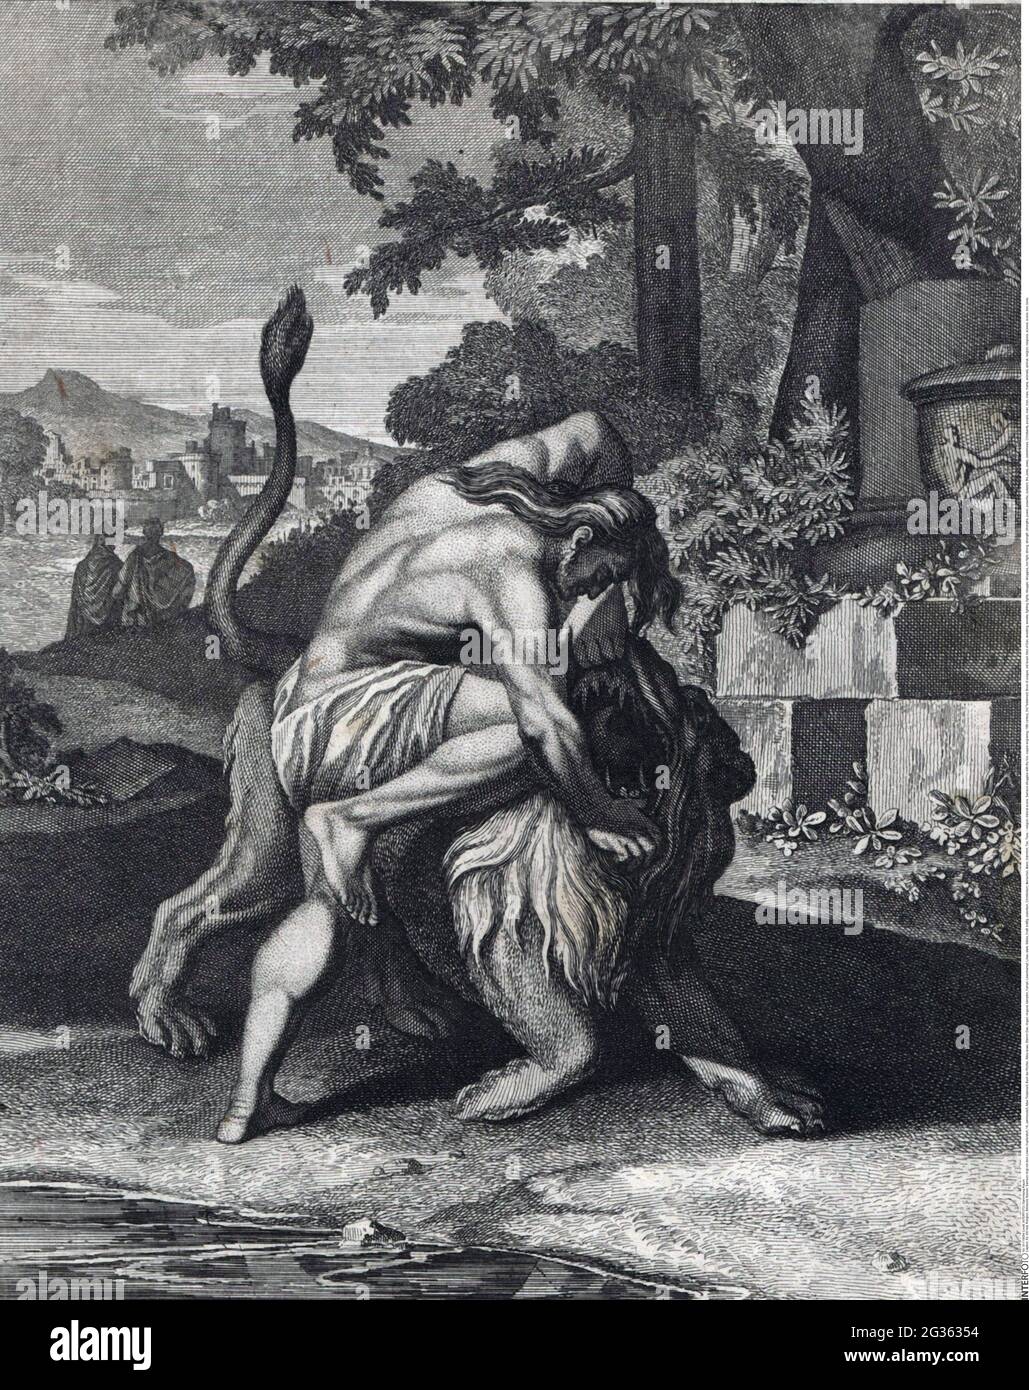 Religione, scena biblica, Samson lotte con il leone, incisione di rame, 18 ° secolo, IL COPYRIGHT DELL'ARTISTA NON DEVE ESSERE ELIMINATO Foto Stock